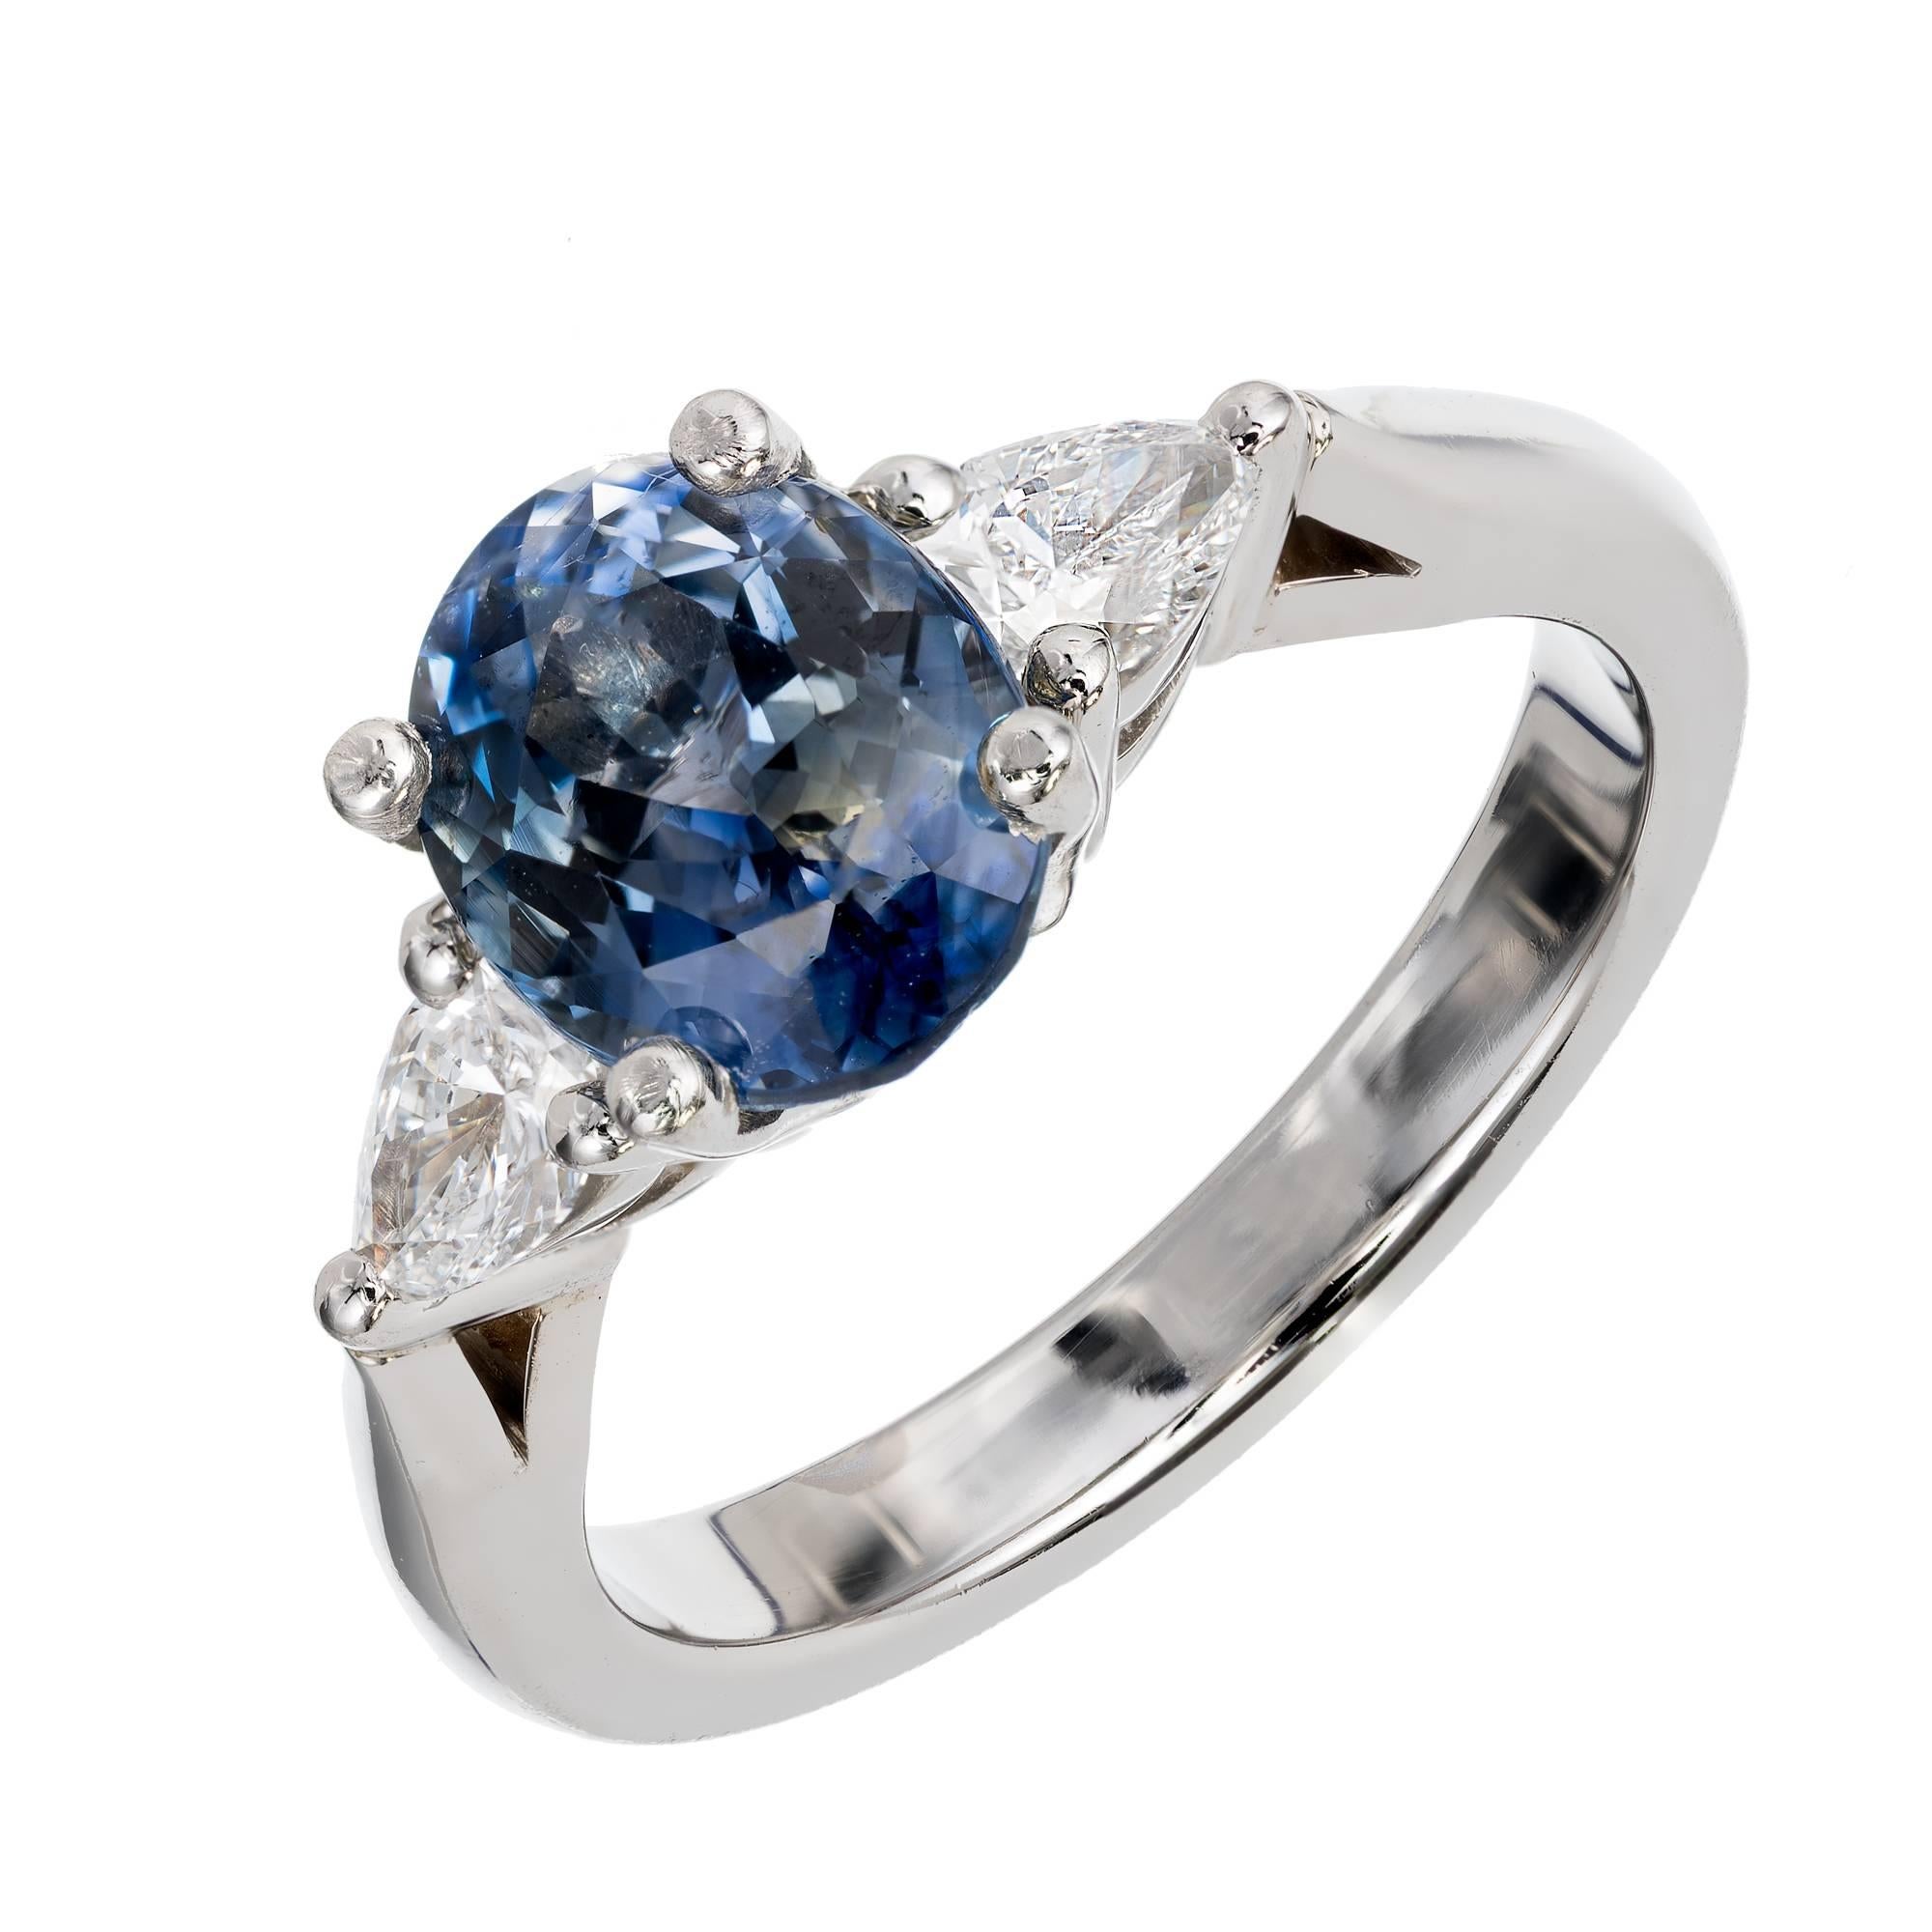 Verlobungsring aus Platin mit 1,35 Karat blauem Saphir und birnenförmigem Diamant von Peter Suchy